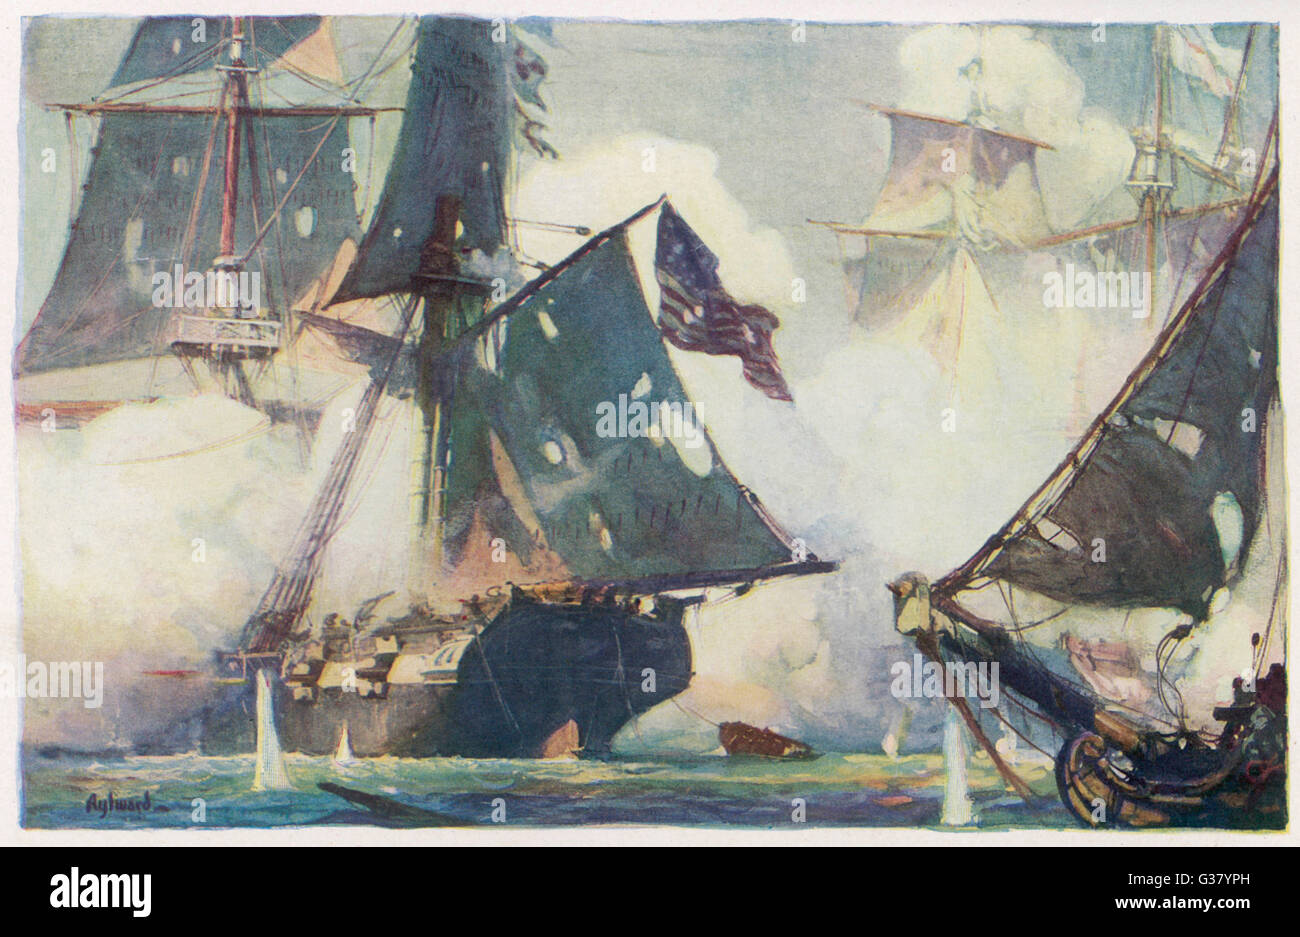 La batalla del lago Erie el buque norteamericano "Niagara" rastrillos los buques británicos 'Detroit' y 'Queen Charlotte', que conduce a una decisiva victoria americana Fecha: 10 de septiembre de 1813 Foto de stock